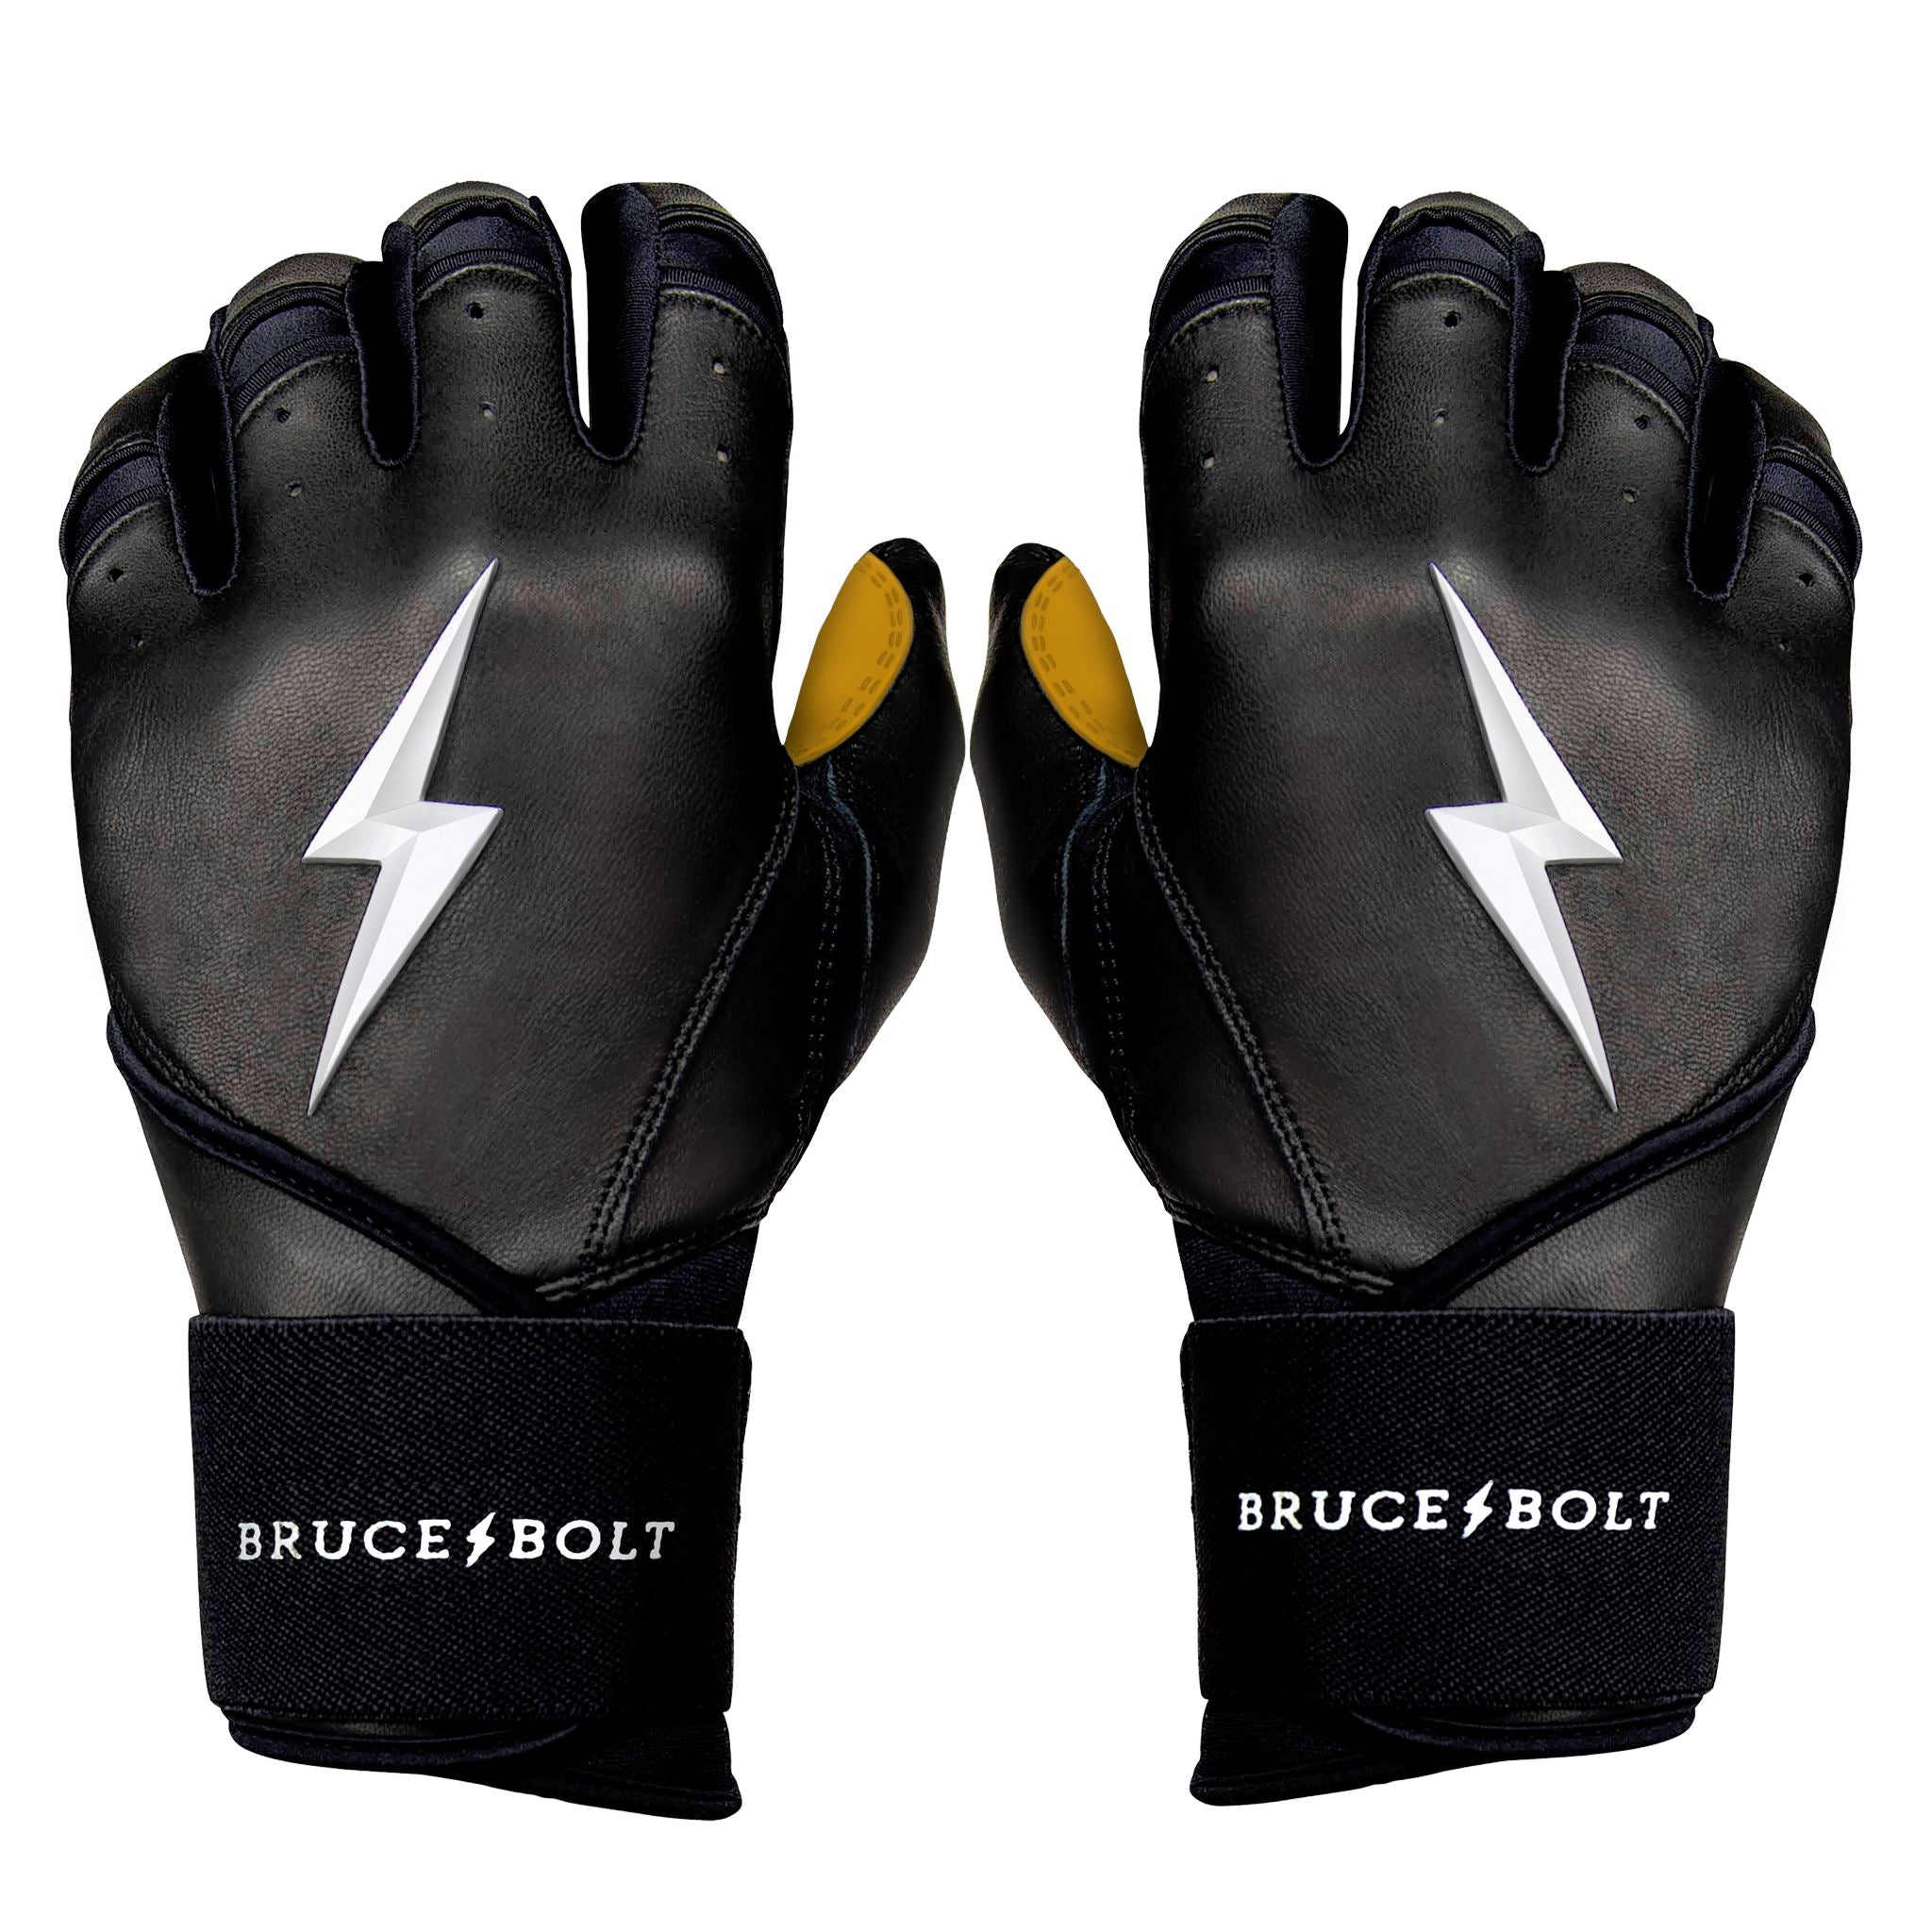 Bruce+Bolt Men's Premium Cabretta Leather Long Cuff Batting